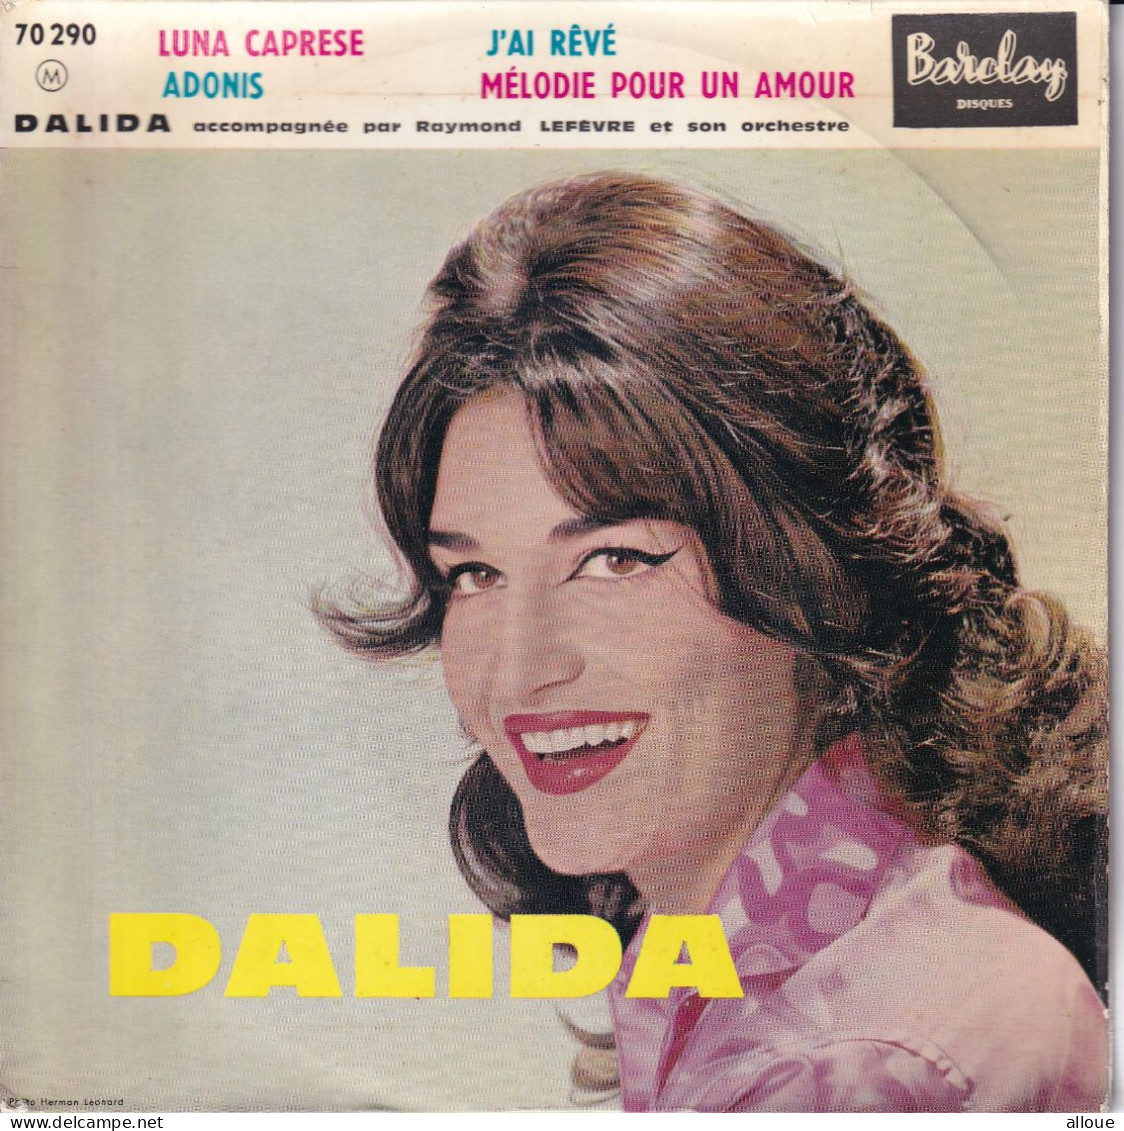 DALIDA - FR EP - LUNA CAPRESE + 3 - Autres - Musique Française